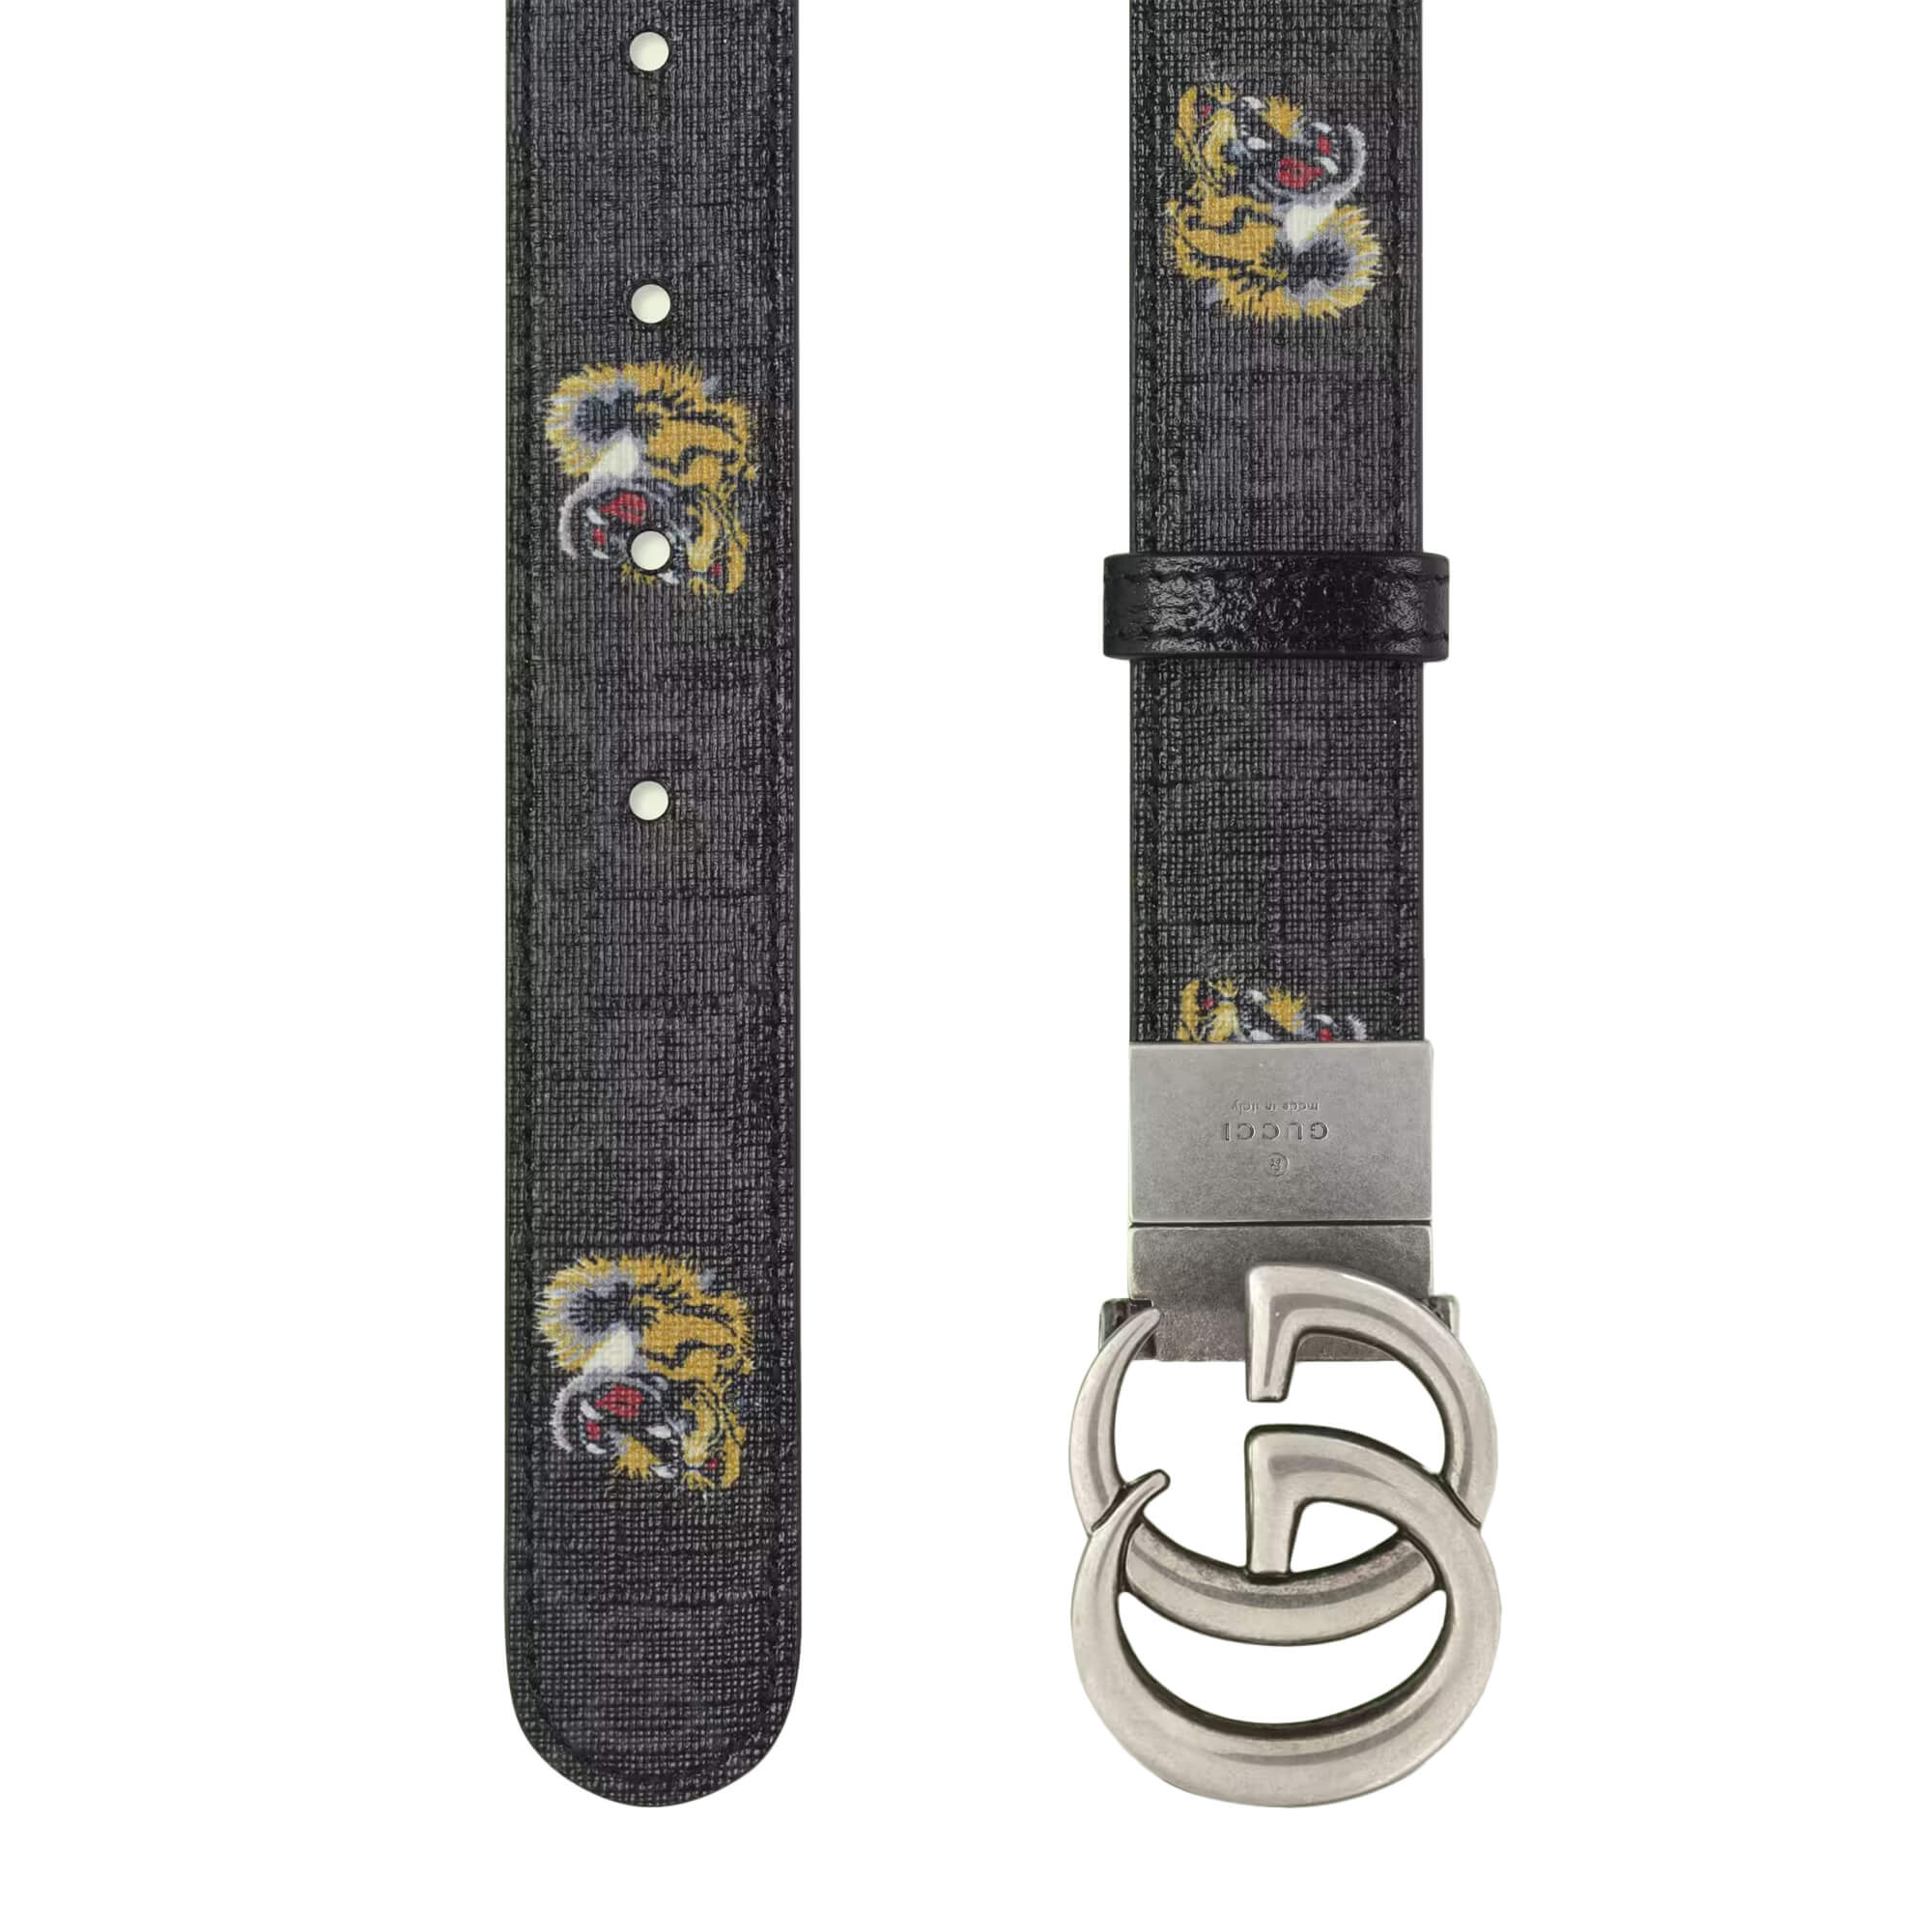 Được trang bị họa tiết hổ hoa và logo GG đặc trưng, Gucci GG Marmont Tiger Print Reversible Belt sẽ là món phụ kiện hoàn hảo cho bất kỳ bộ trang phục nào của bạn. Hãy xem hình ảnh liên quan để chiêm ngưỡng sự kết hợp tinh tế của Gucci trong từng chi tiết.